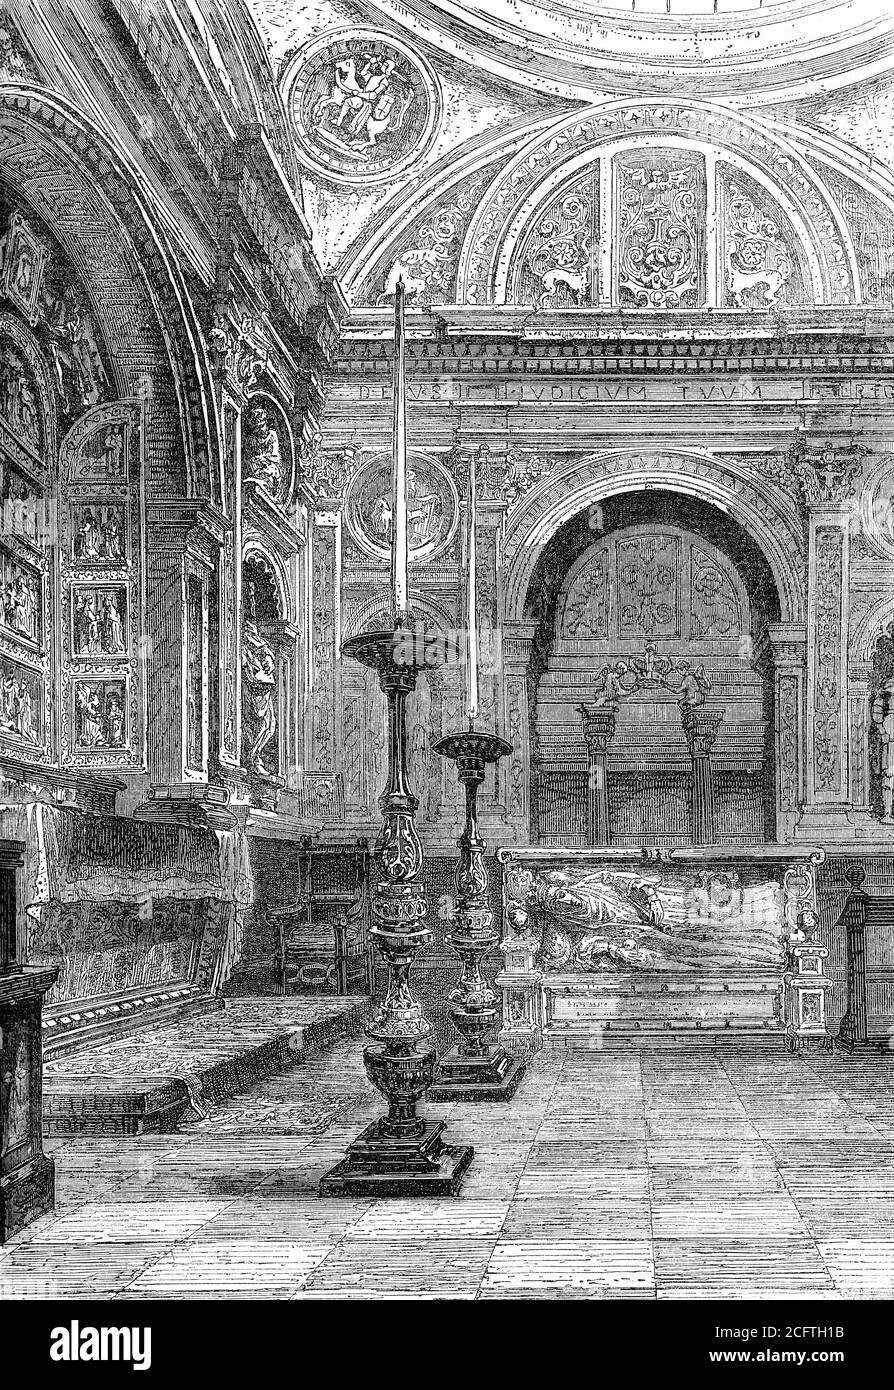 Incisione della tomba di Anna Jagiellon nella Cattedrale di Cracovia. Anna (1523 – 1596) è stata Regina della Polonia e Granduchessa di Lituania dal 1575 al 1586. Illustrazione da 'la storia del Protestantismo' di James Aitken Wylie (1808-1890), pub. 1878 Foto Stock